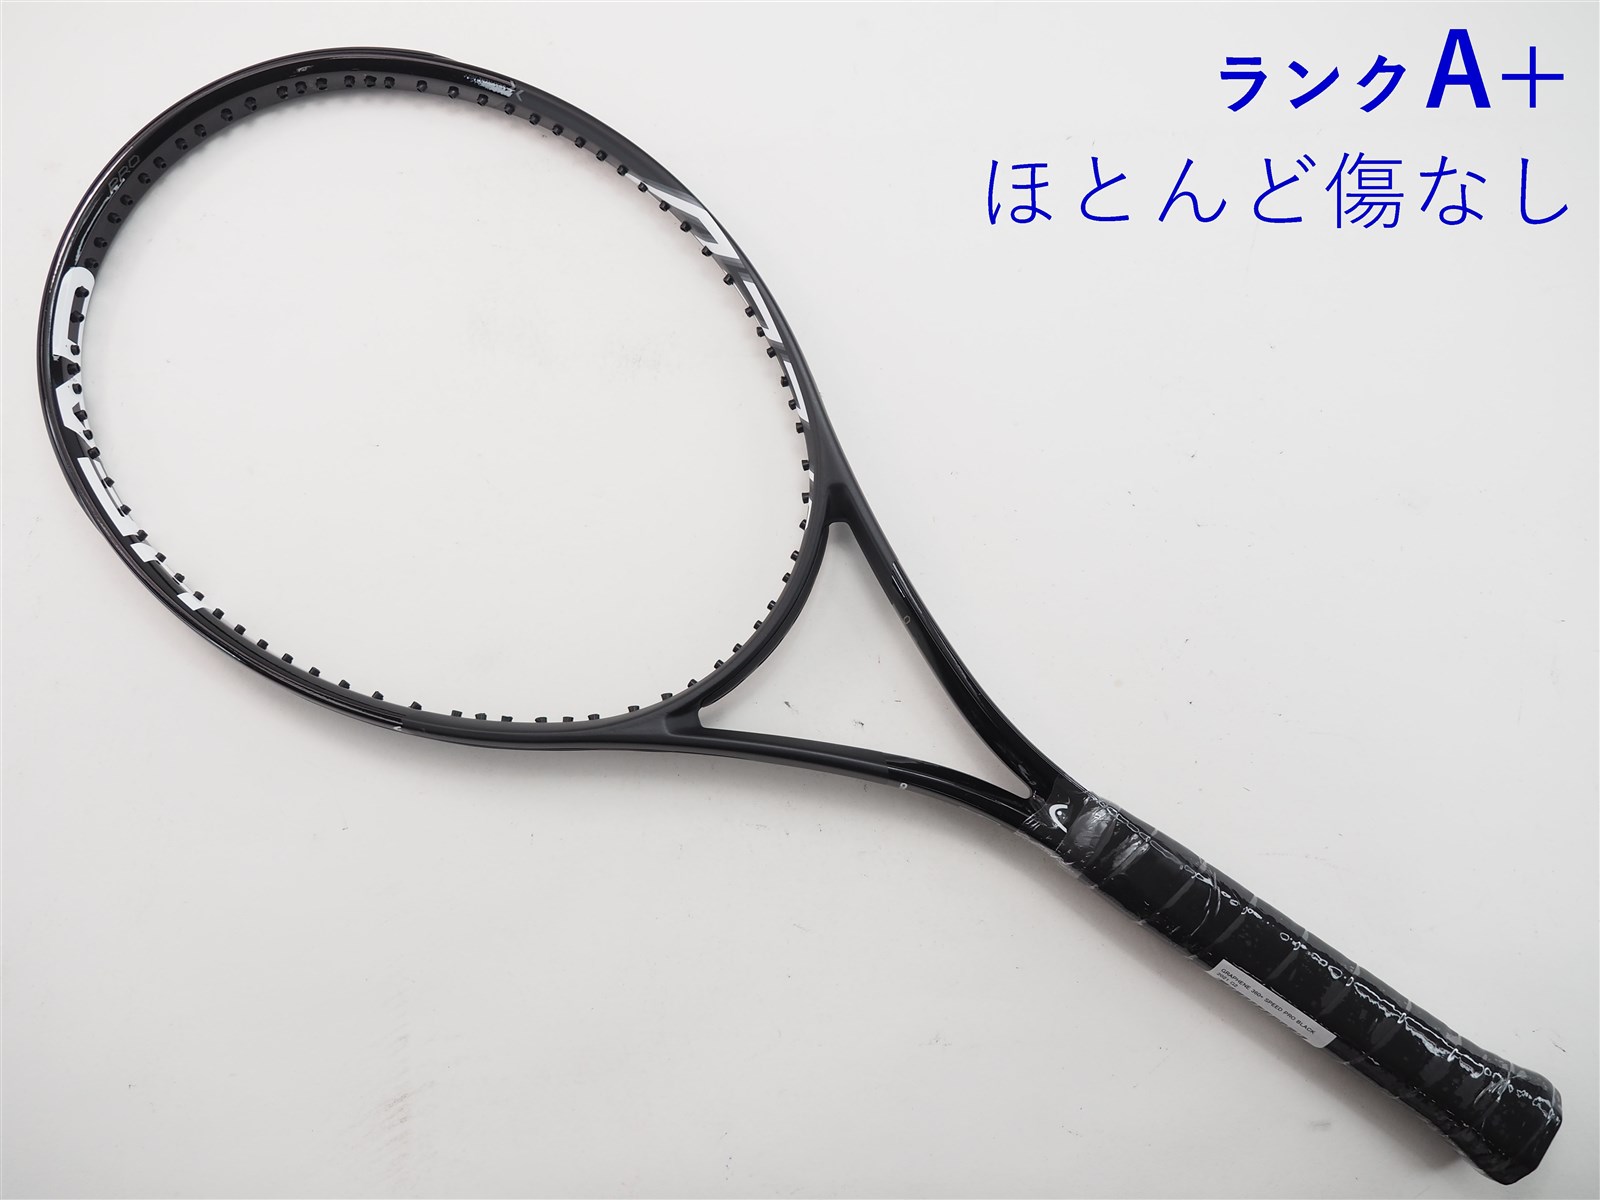 テニスラケット ヘッド グラフィン 360 スピード エス 2018年モデル (G2)HEAD GRAPHENE 360 SPEED S 2018